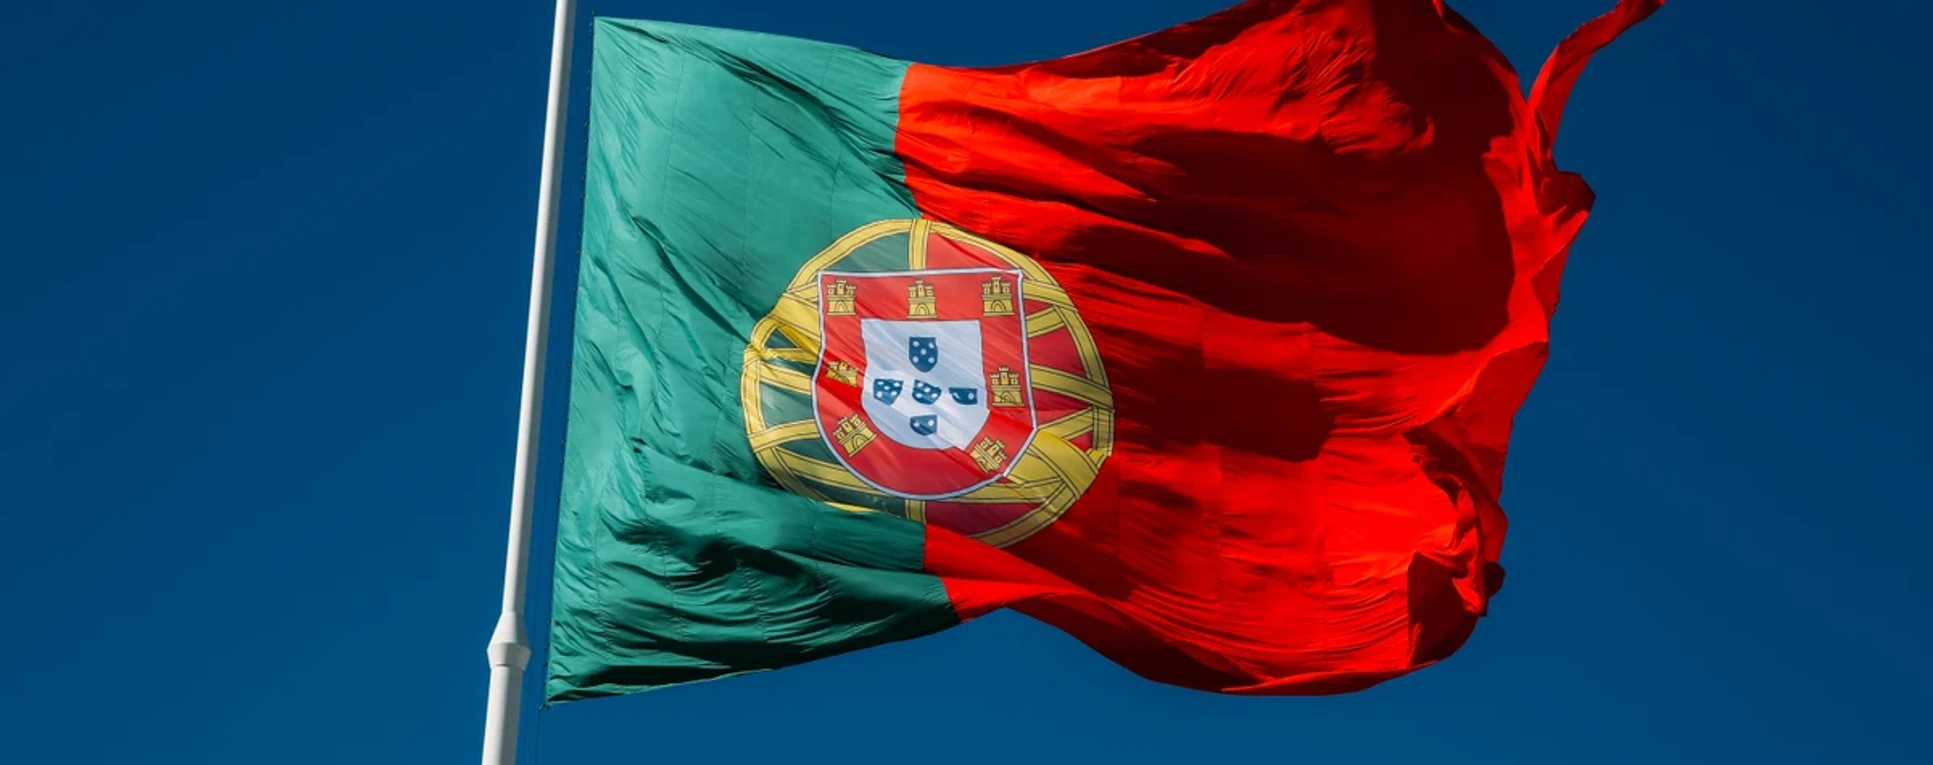 NHR Portugal